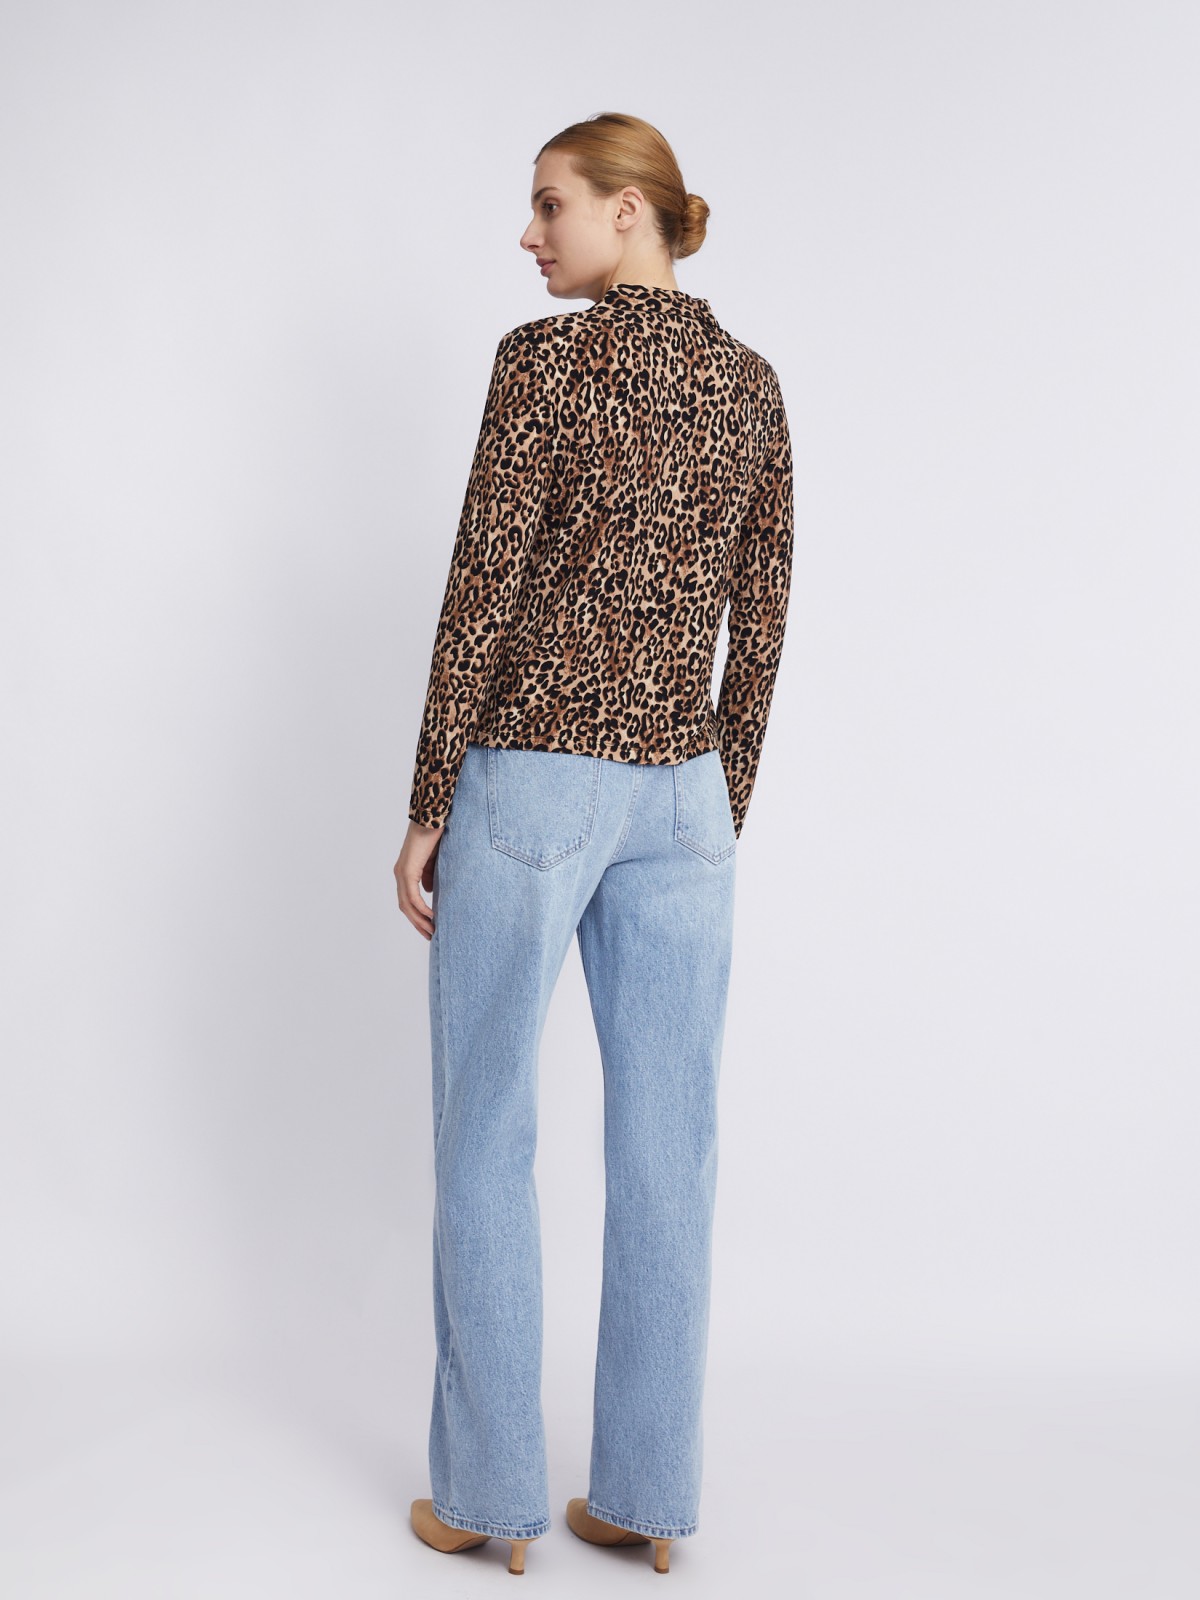 Трикотажная блузка с длинным рукавом и леопардовым принтом zolla 023311152513, цвет бежевый, размер S - фото 6